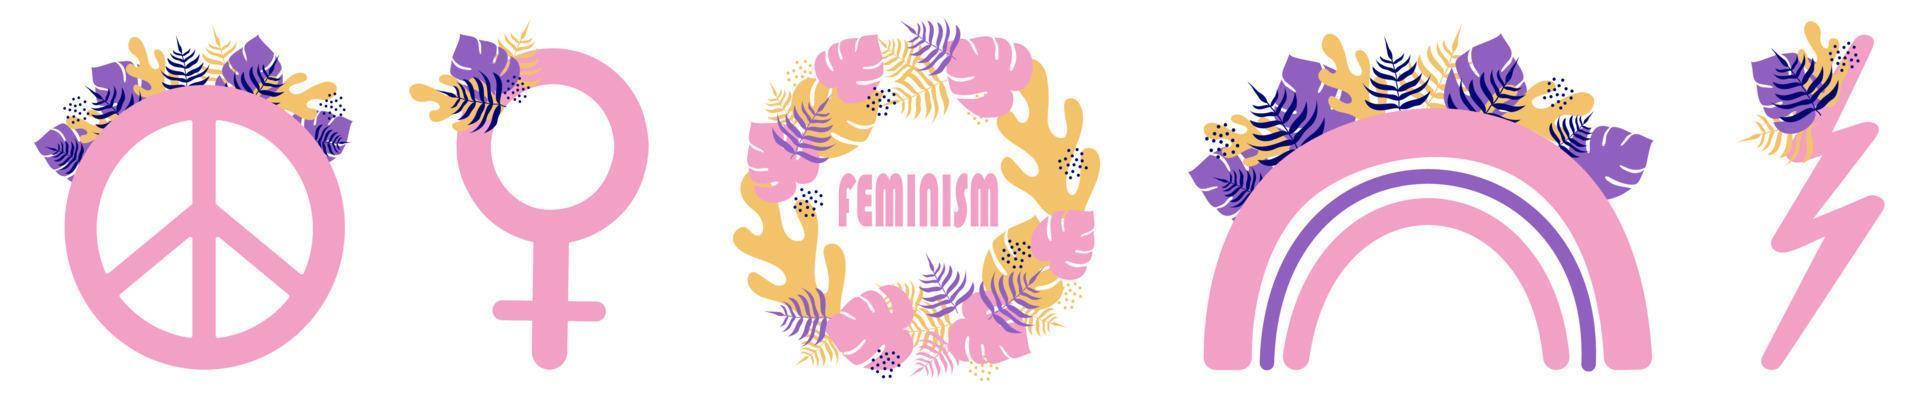 Set of feminist stickers. Girl power. vector